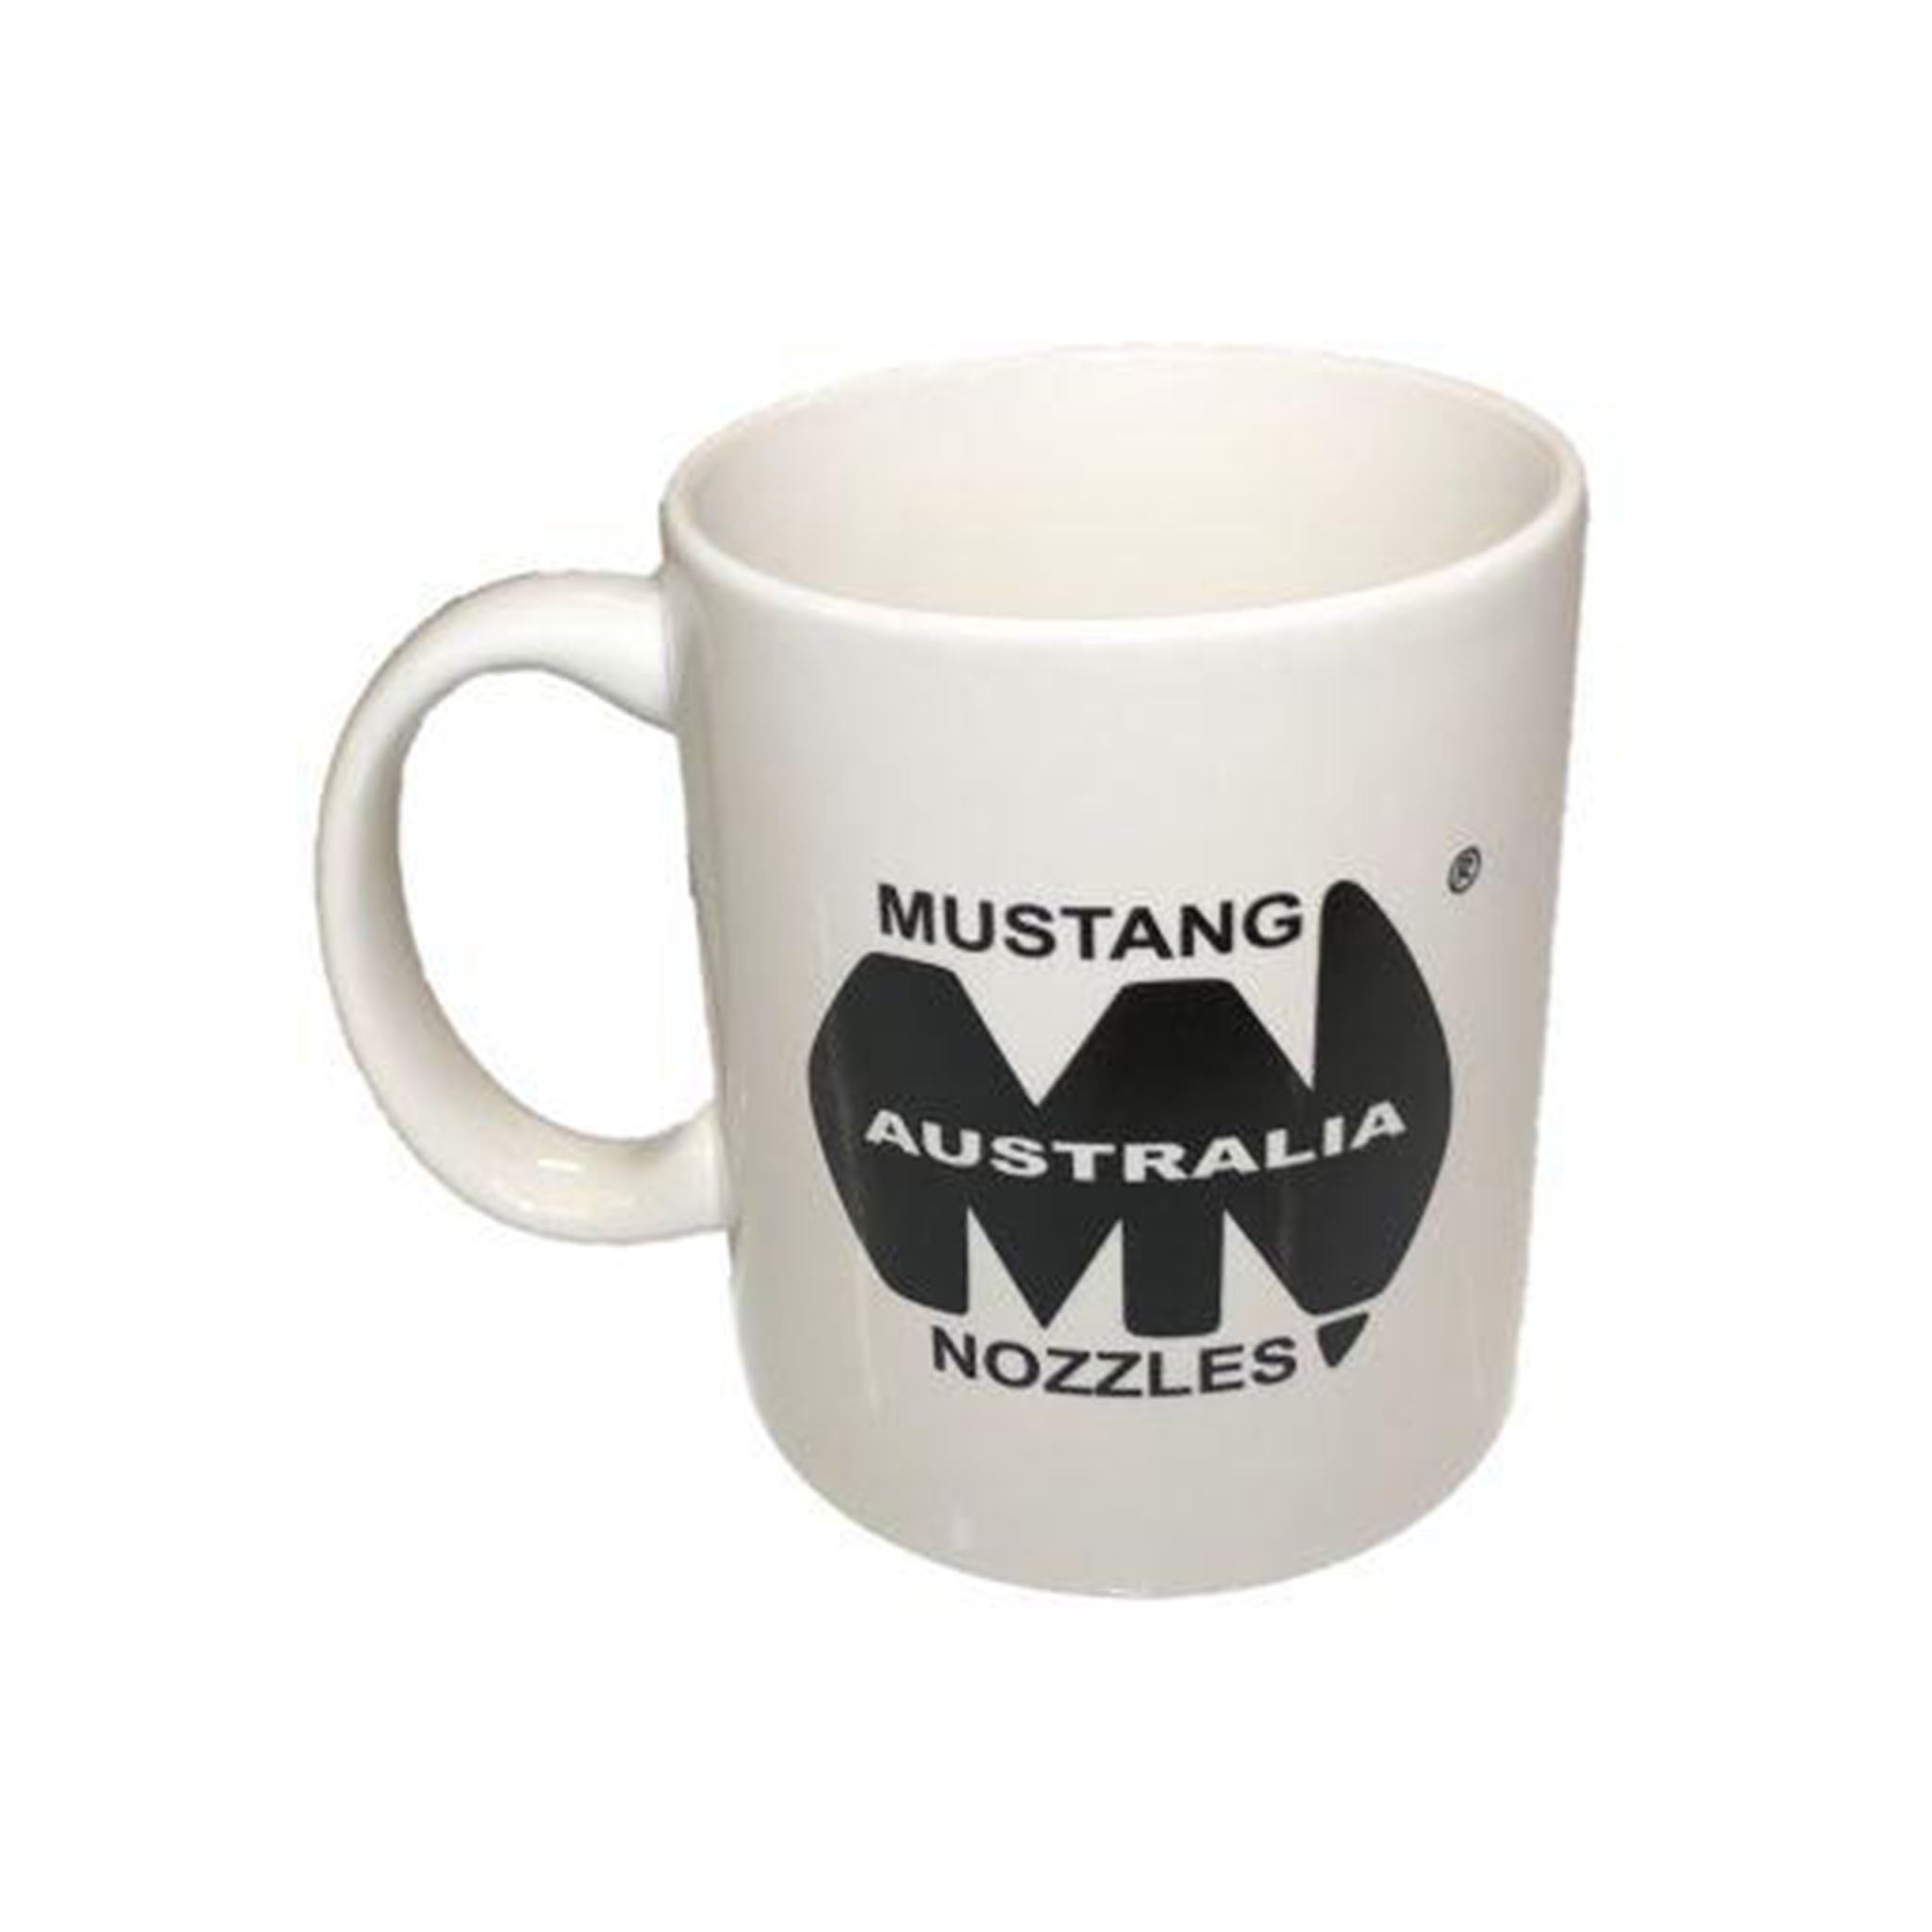 Mustang Nozzles Mug